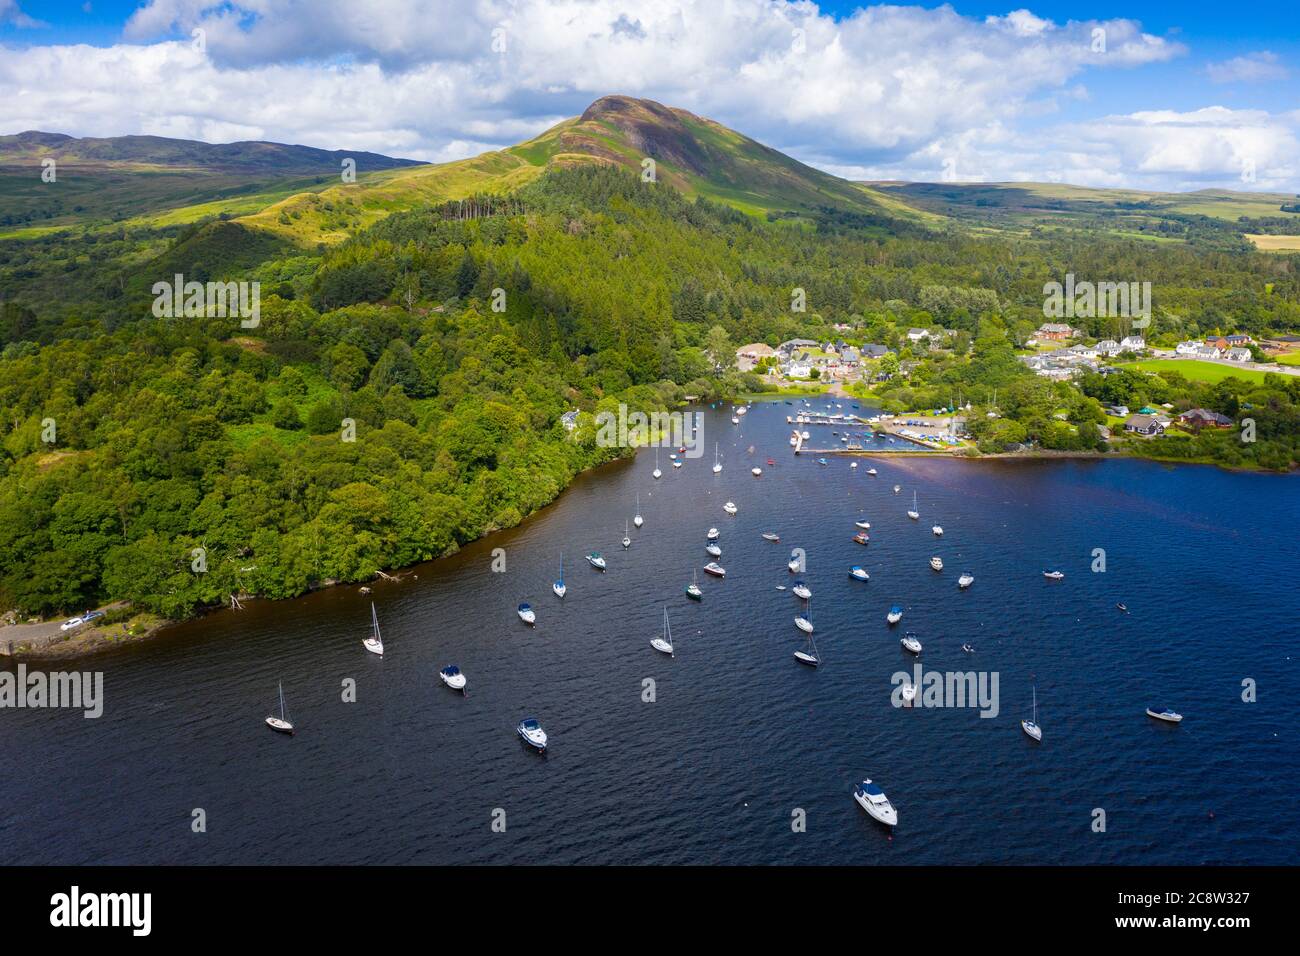 Vue aérienne du village de Balmaha et de Conic Hill sur les rives du Loch Lomond dans le Loch Lomond et du parc national des Trossachs, Écosse, Royaume-Uni Banque D'Images